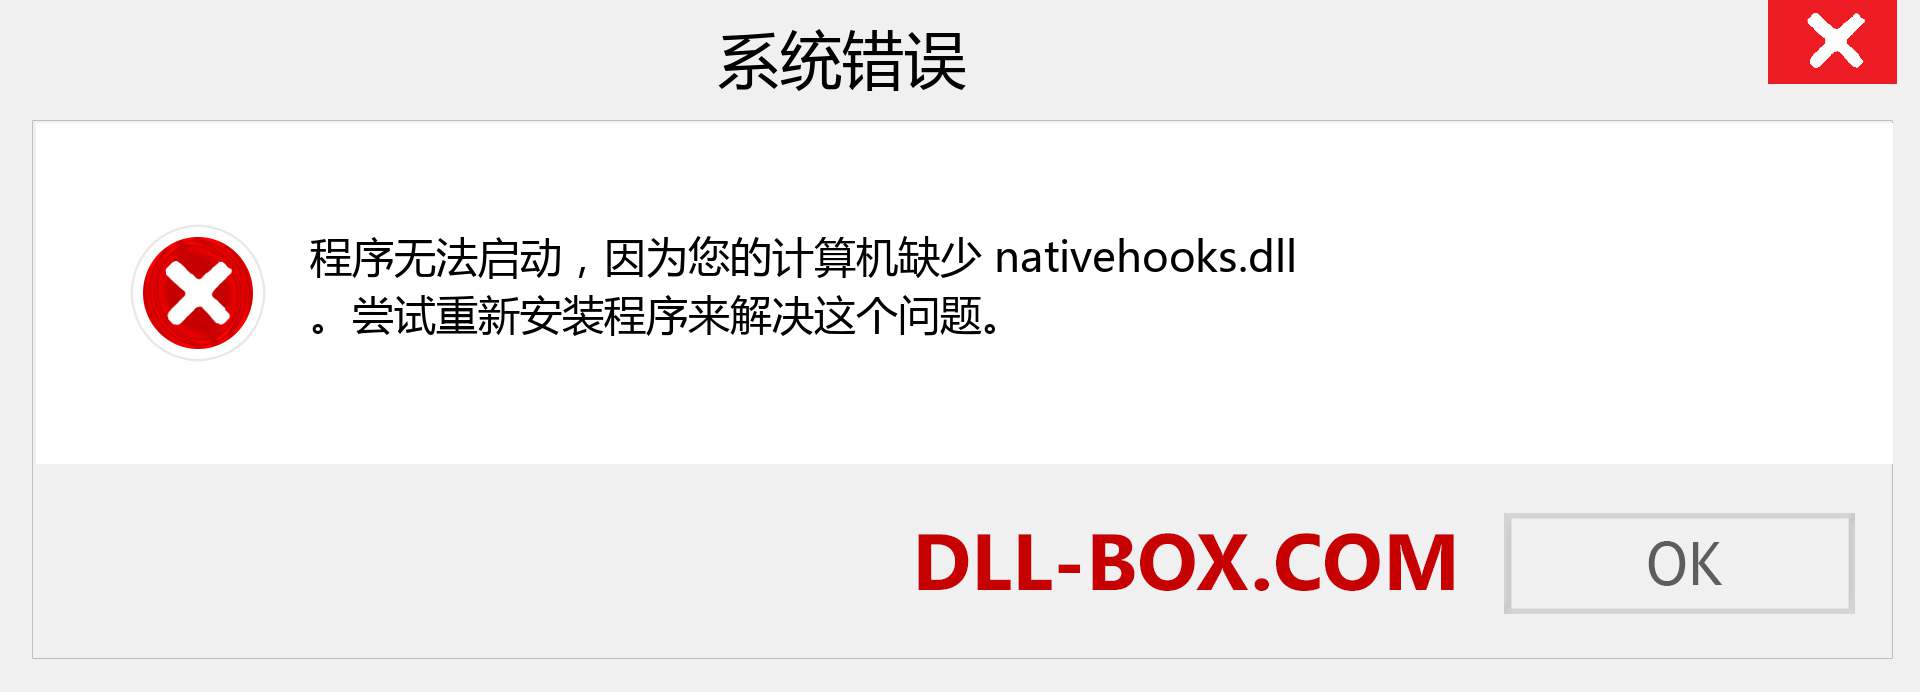 nativehooks.dll 文件丢失？。 适用于 Windows 7、8、10 的下载 - 修复 Windows、照片、图像上的 nativehooks dll 丢失错误